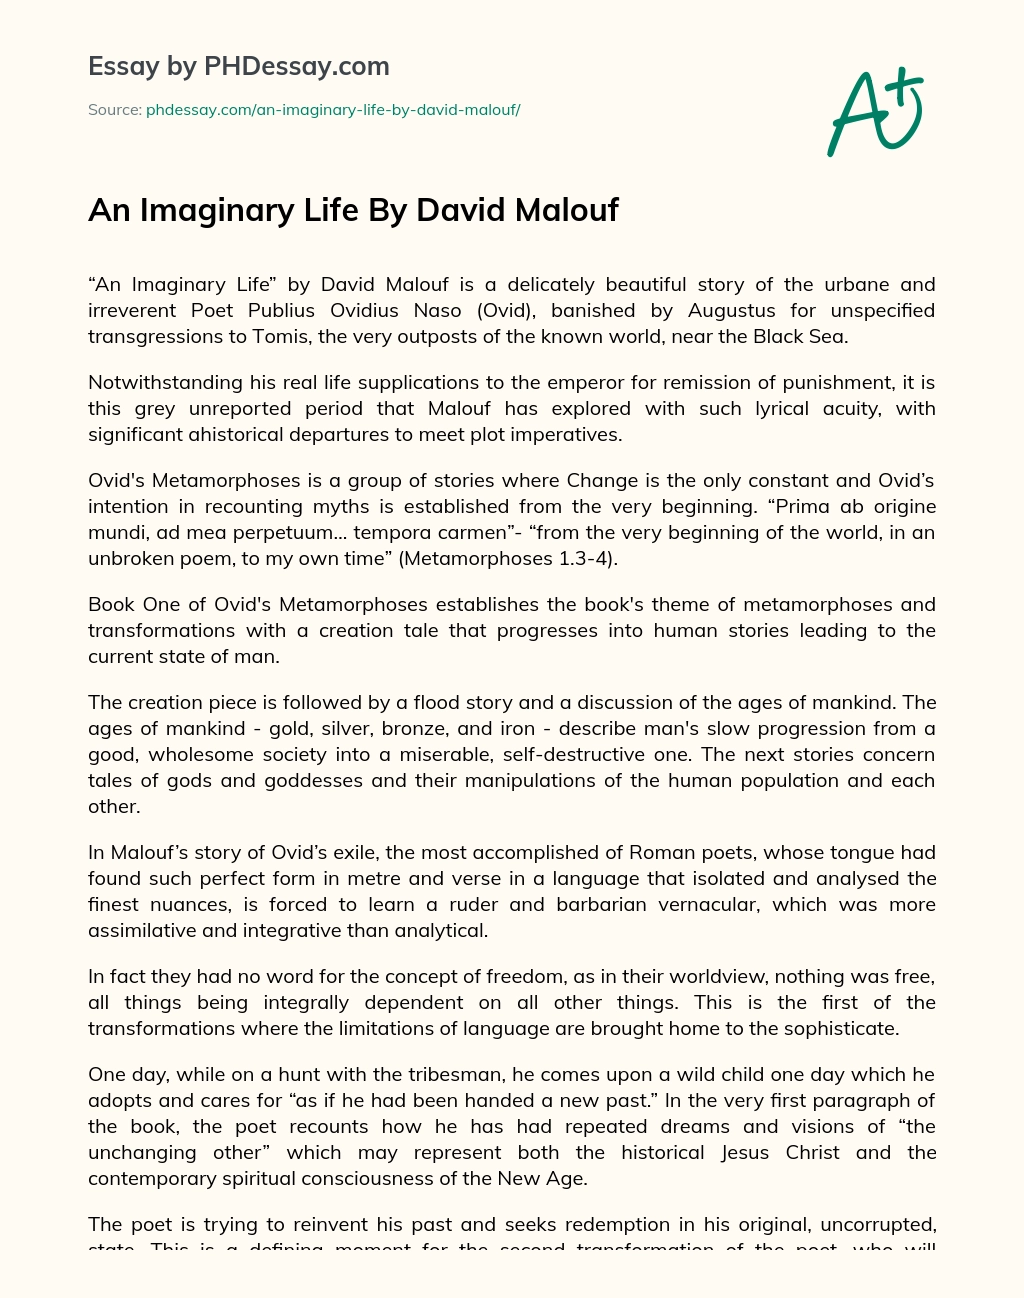 An Imaginary Life  By David Malouf essay